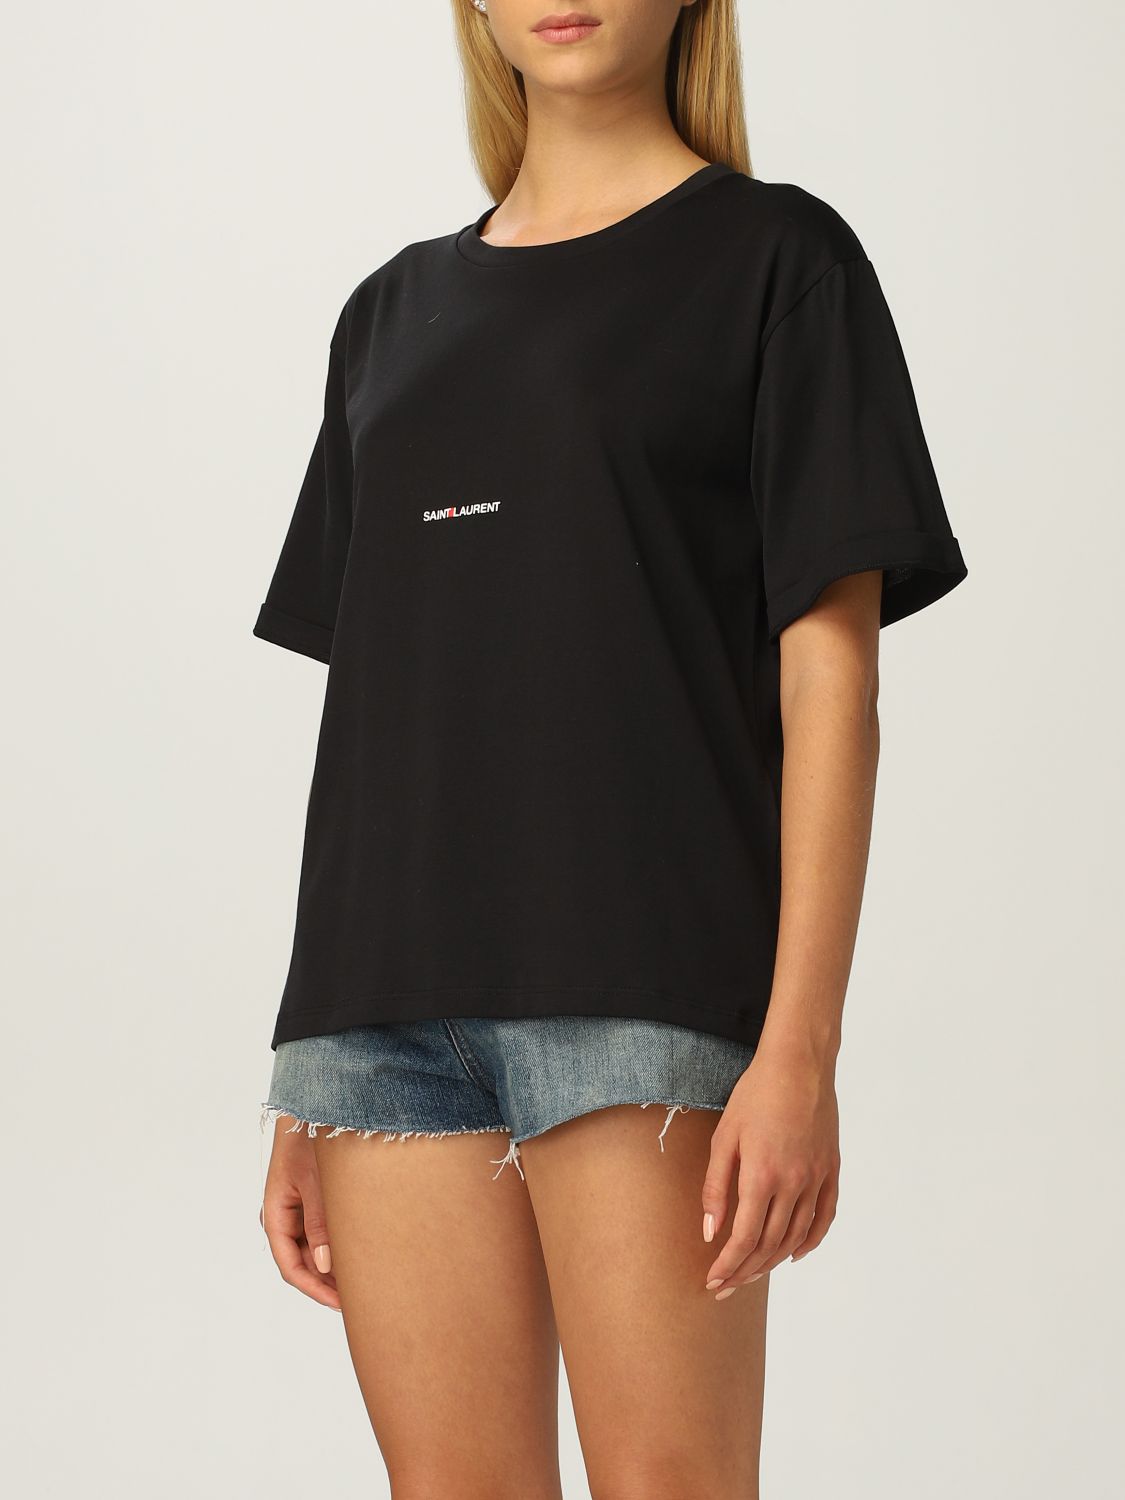 Camiseta Saint Laurent: Camiseta mujer Saint Laurent negro 4